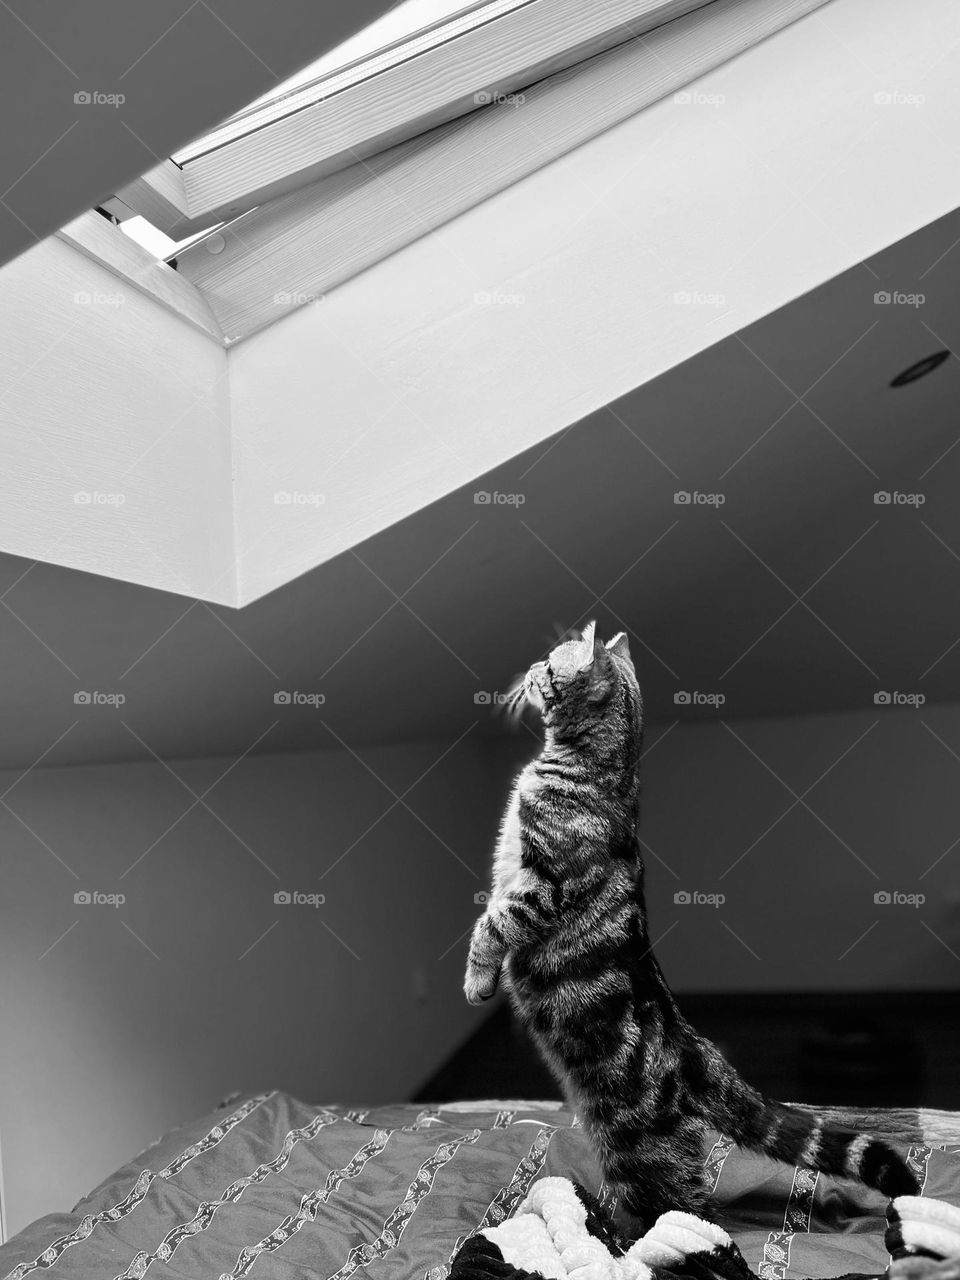 Straighten cat looking into opened window under roof